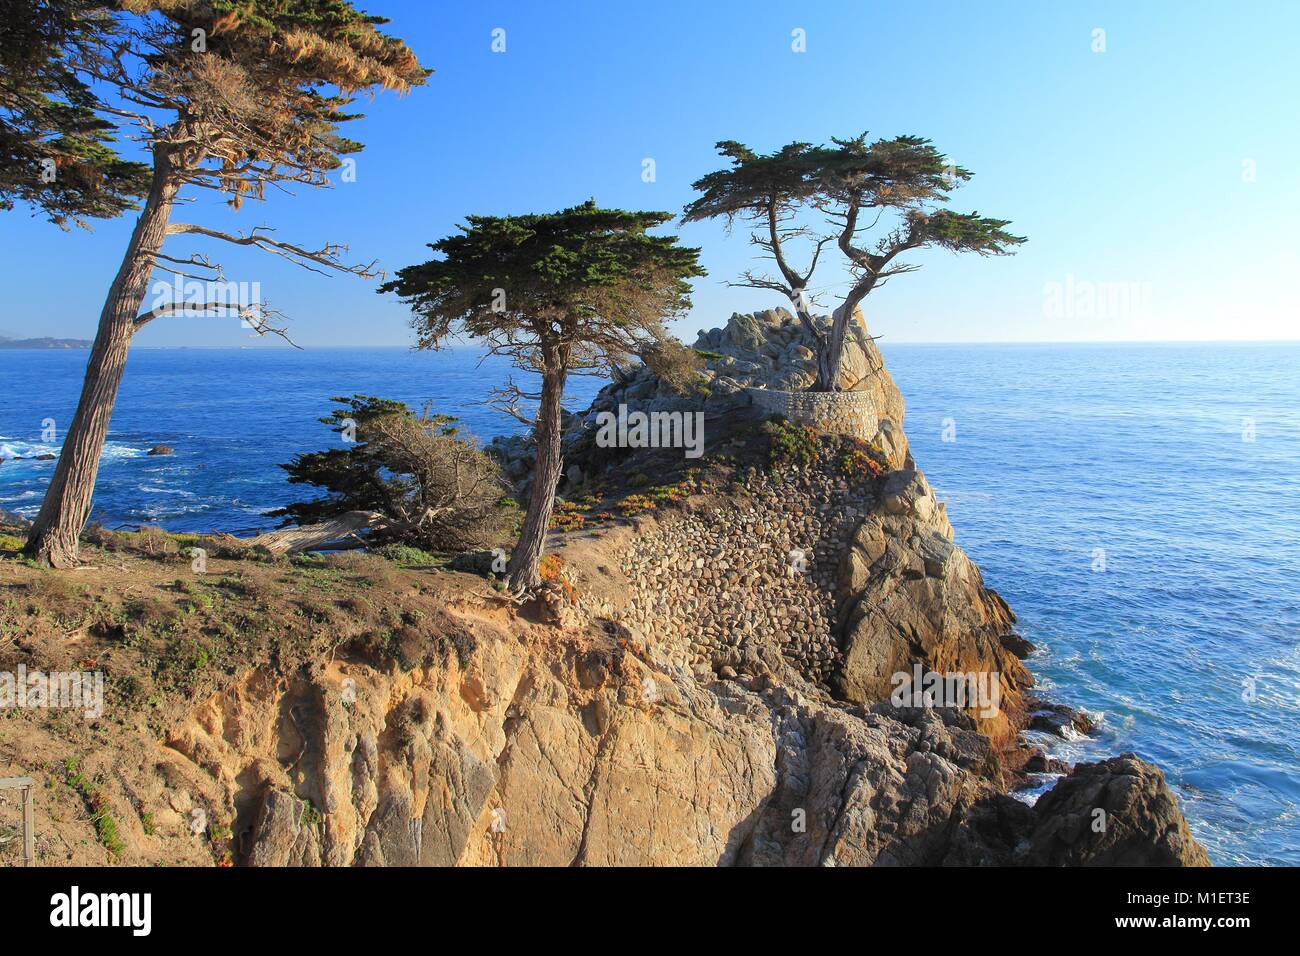 MONTEREY, Kalifornien - 7. APRIL 2014: Lone Cypress Tree View an der berühmten 17 km Fahrt in Monterey. Quellen behaupten, es ist eines der am meisten fotografierten Stockfoto